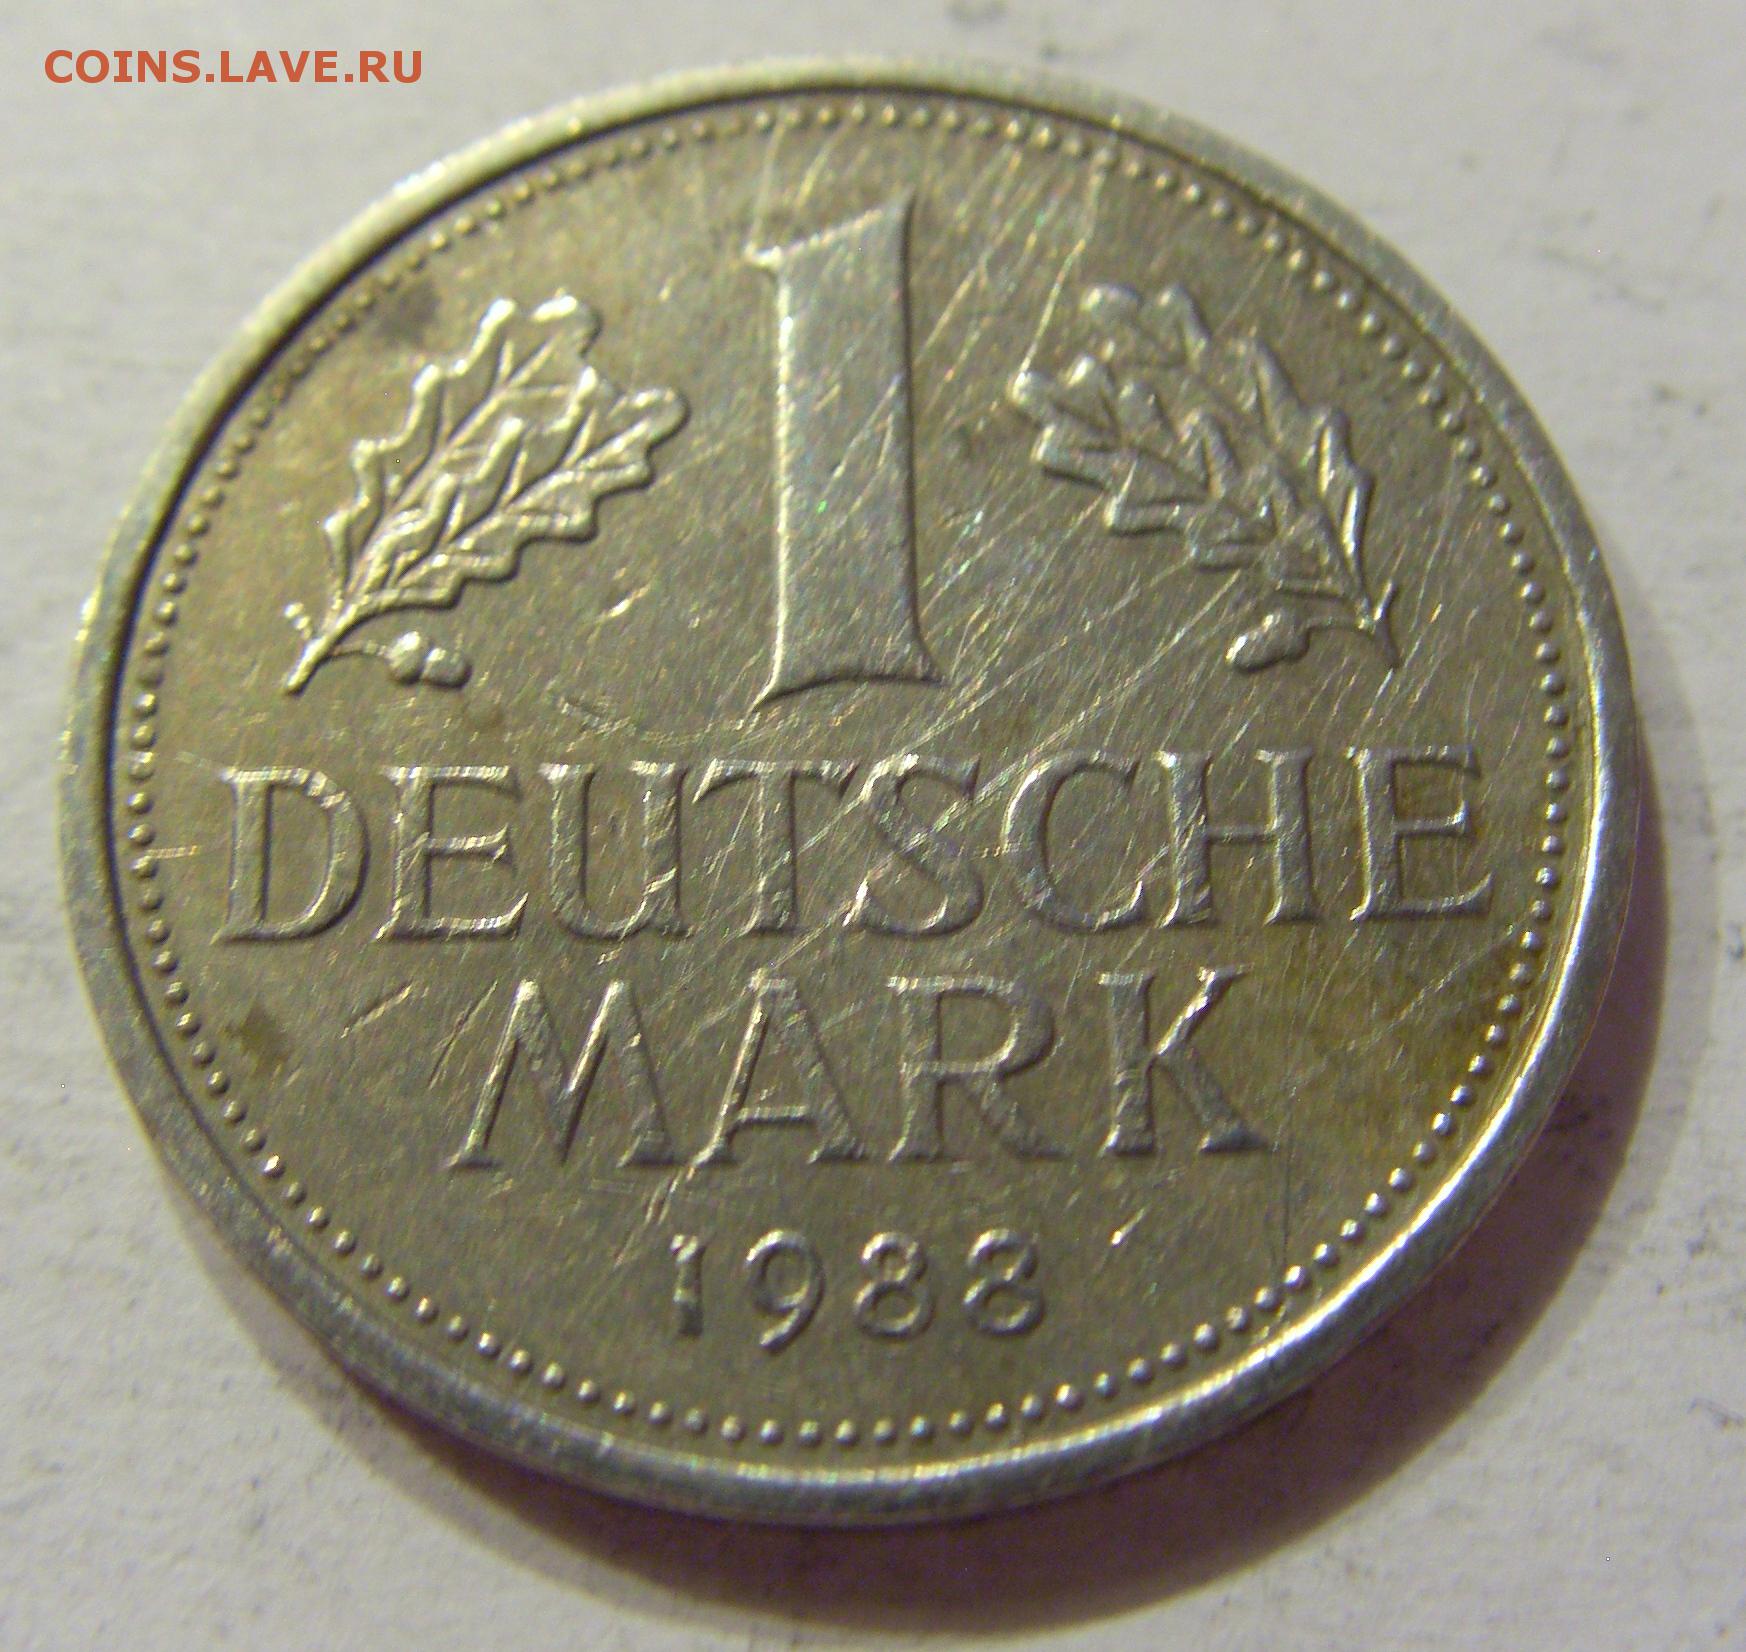 Deutsche mark. Немецкие марки монеты. Немецкая Макарка монета. Монета нем марка ФРГ. Первая немецкая марка.